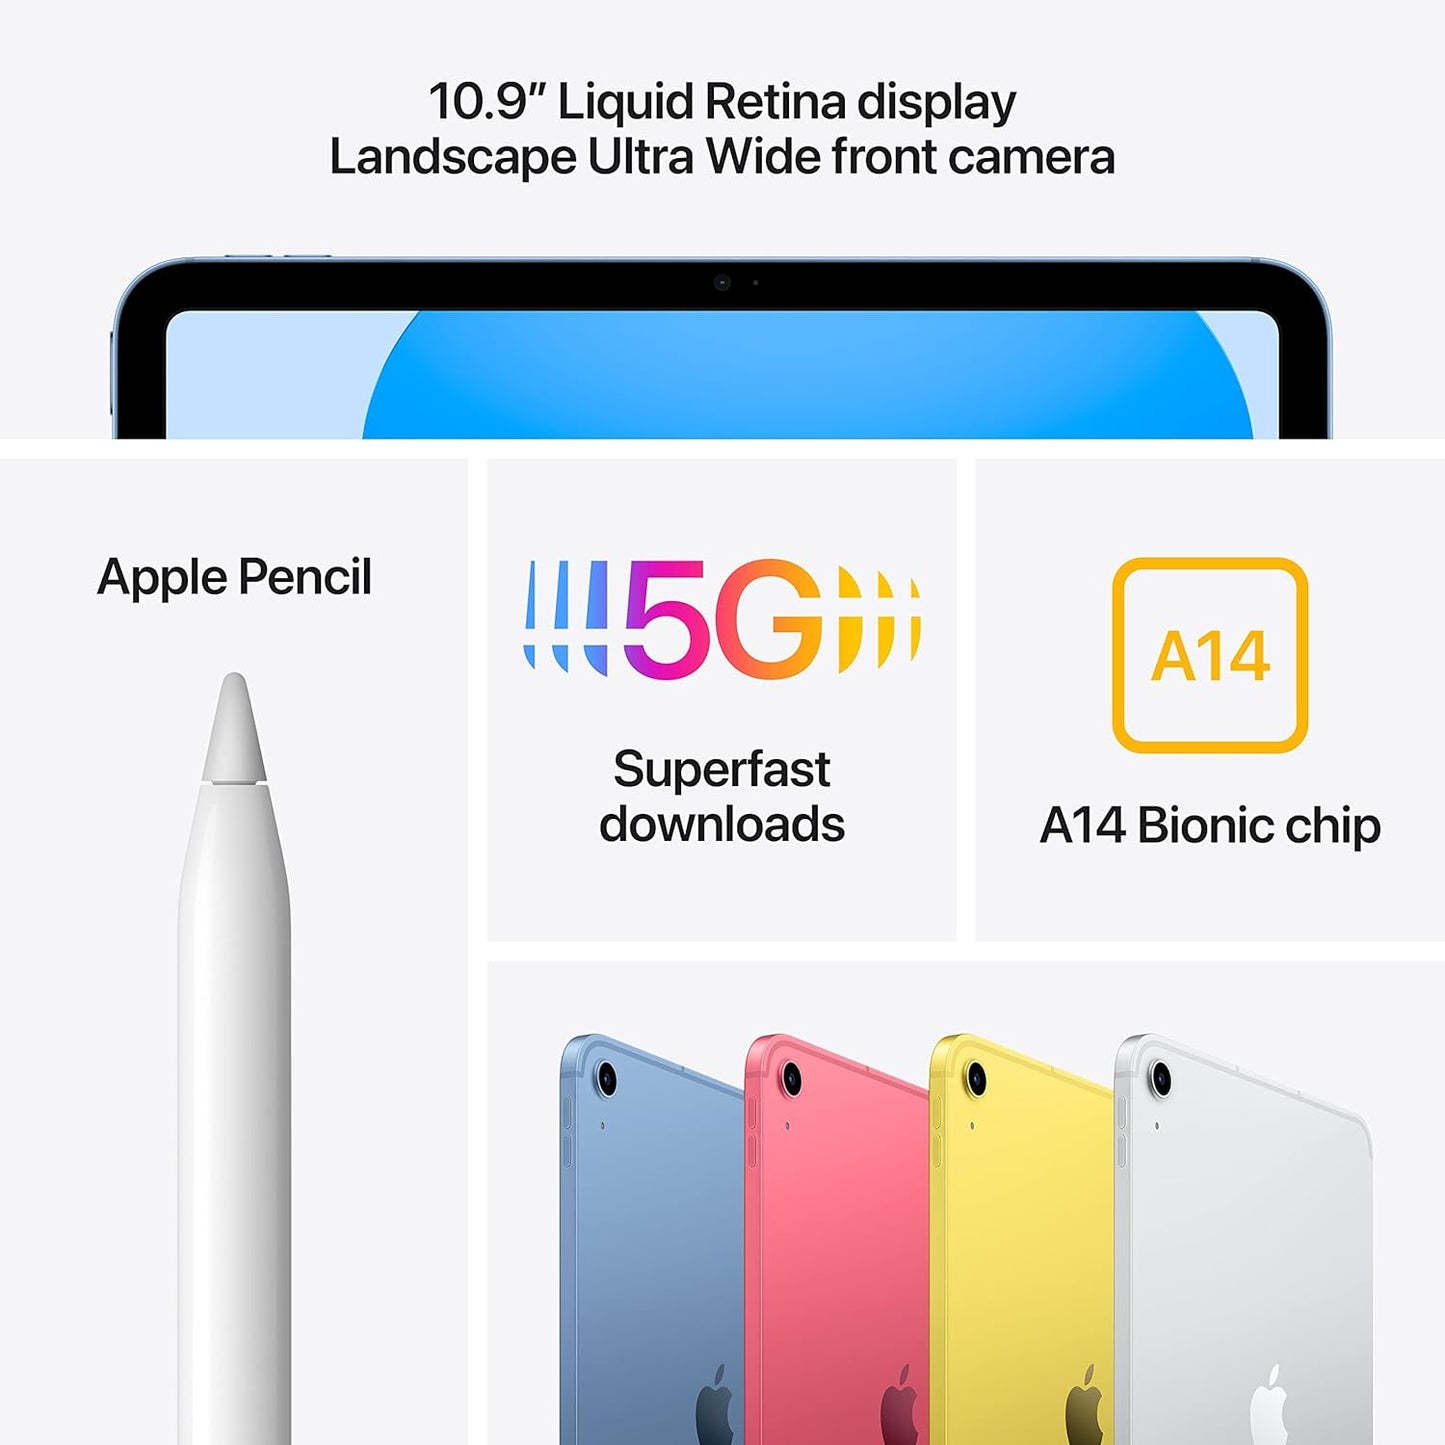 Apple 2022 10.9-inch iPad (Wi-Fi + Cellular, 256GB) - Silver (10th generation)